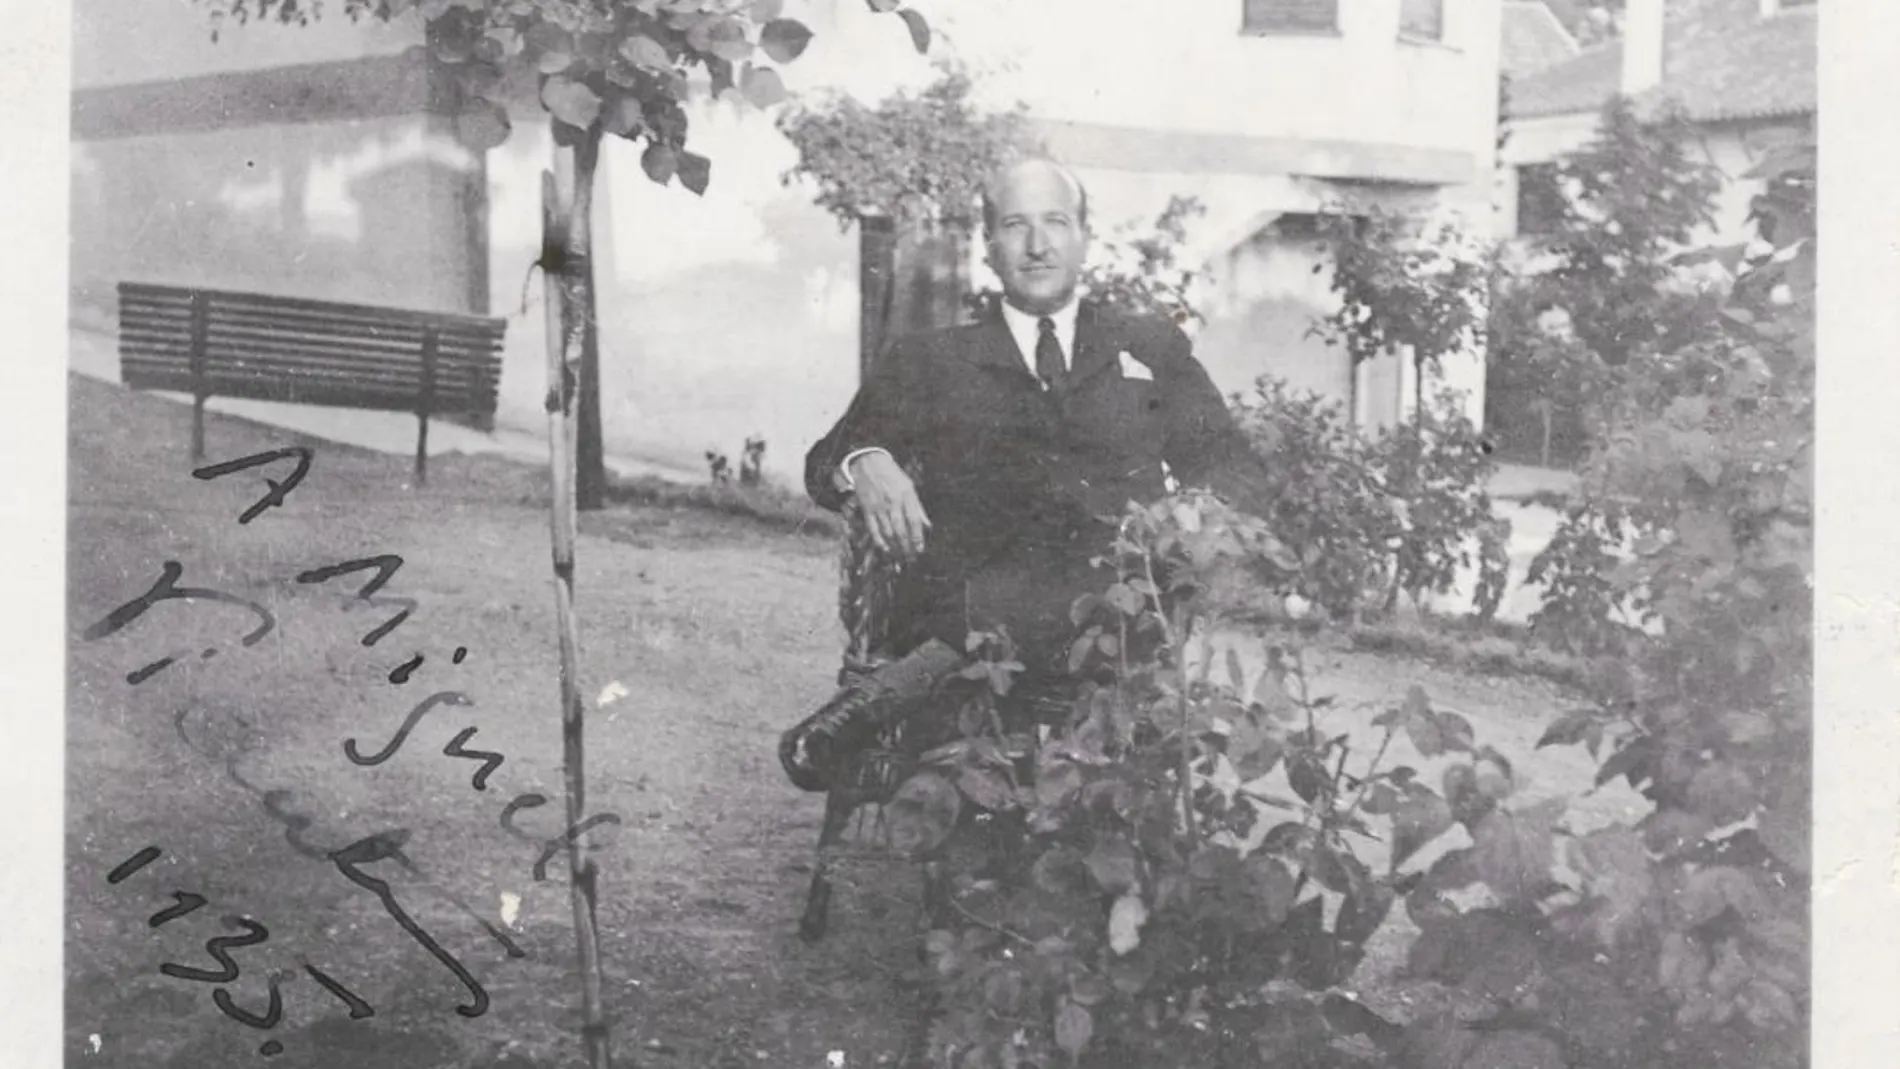 Aleixandre dedicó esta fotografía a un amigo en el que él aparece sentado en el patio de su casa